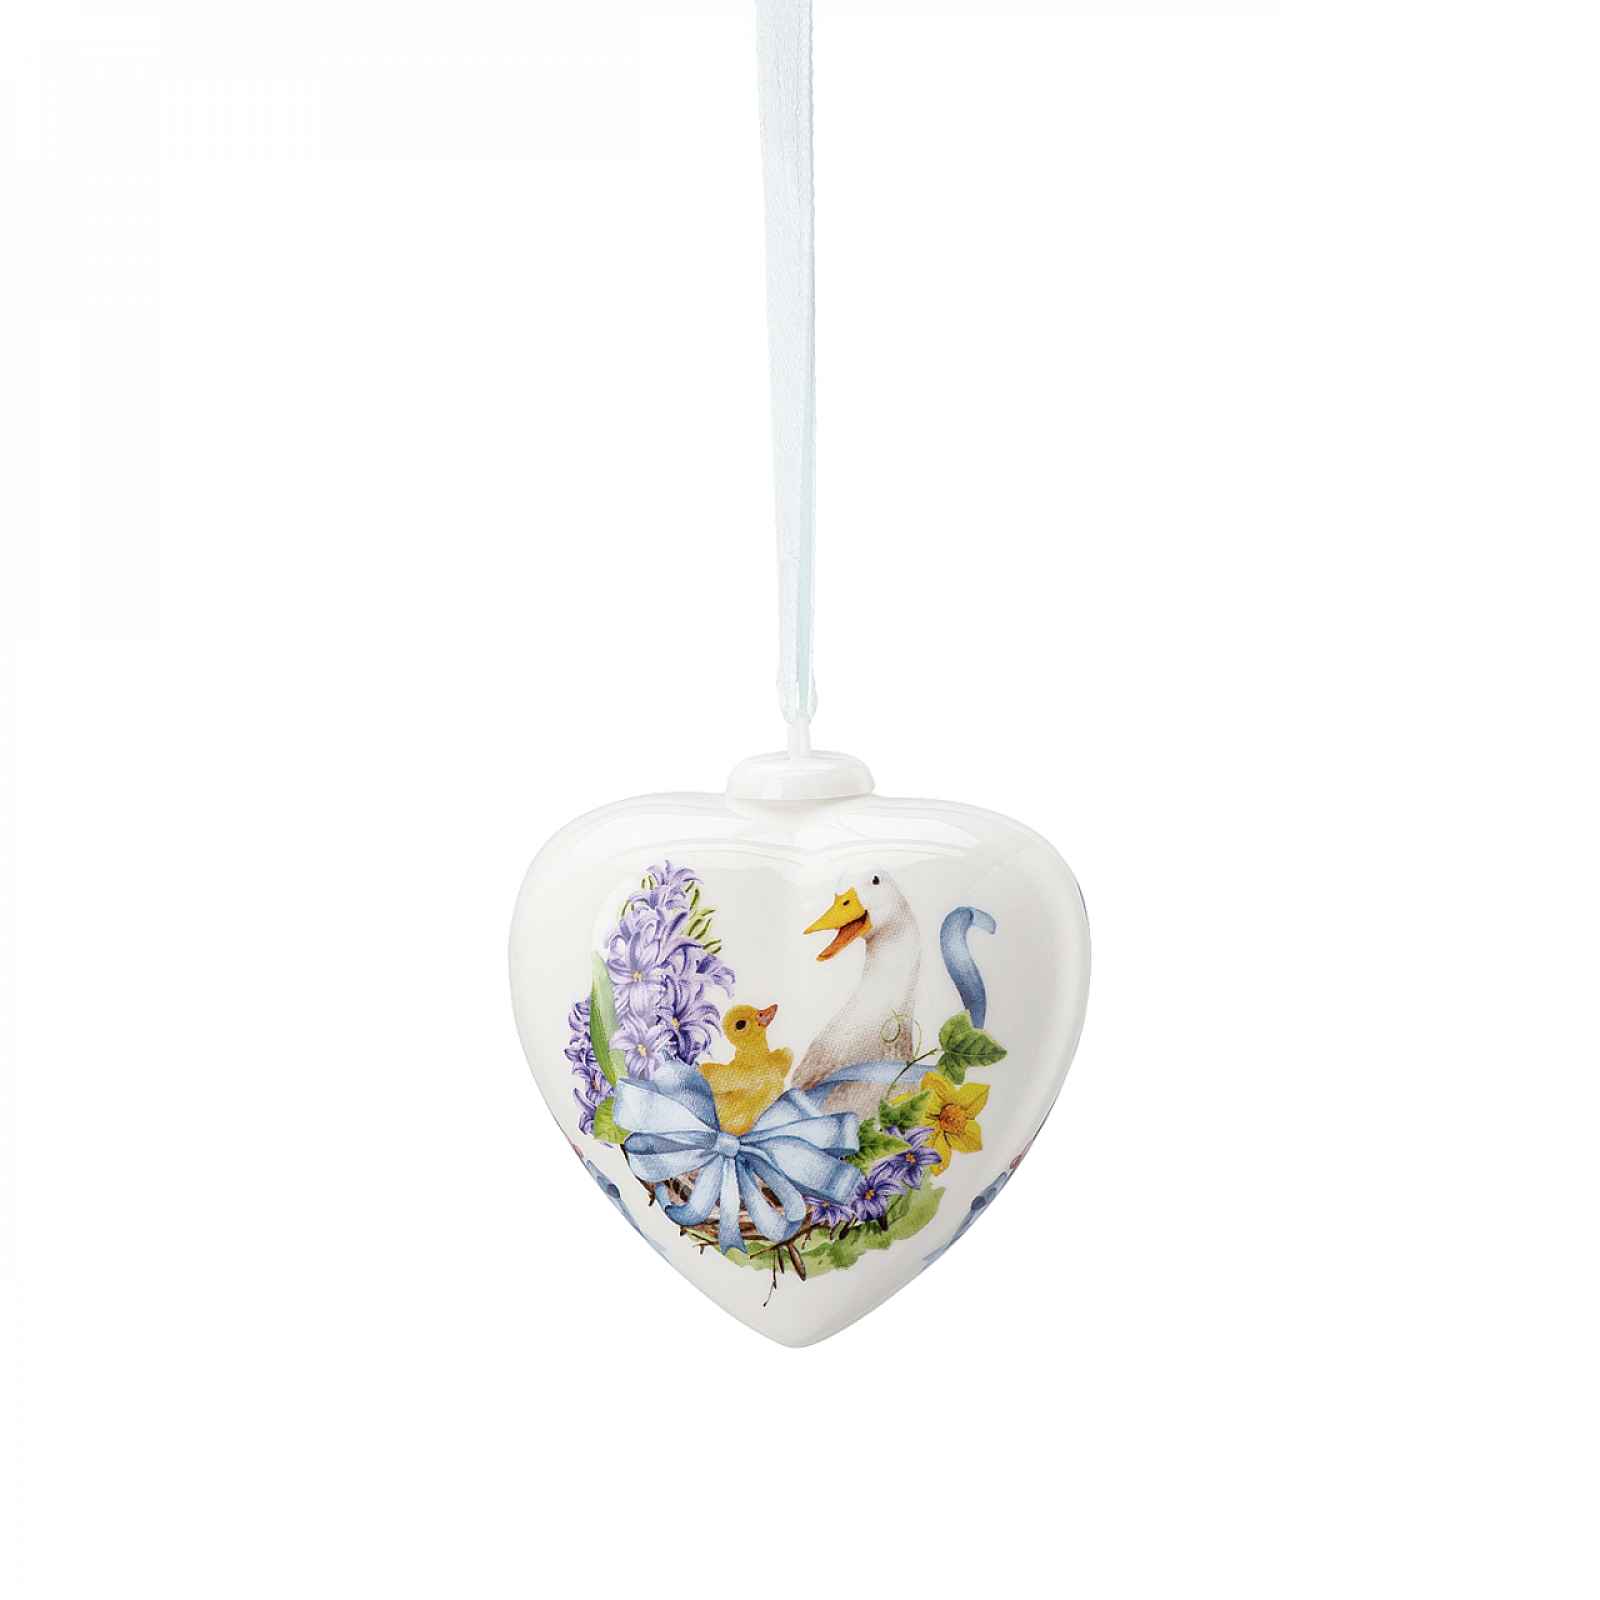 Rosenthal Velikonoční porcelánová závěsná dekorace srdce "Husy", 7 cm 02256-724079-27841